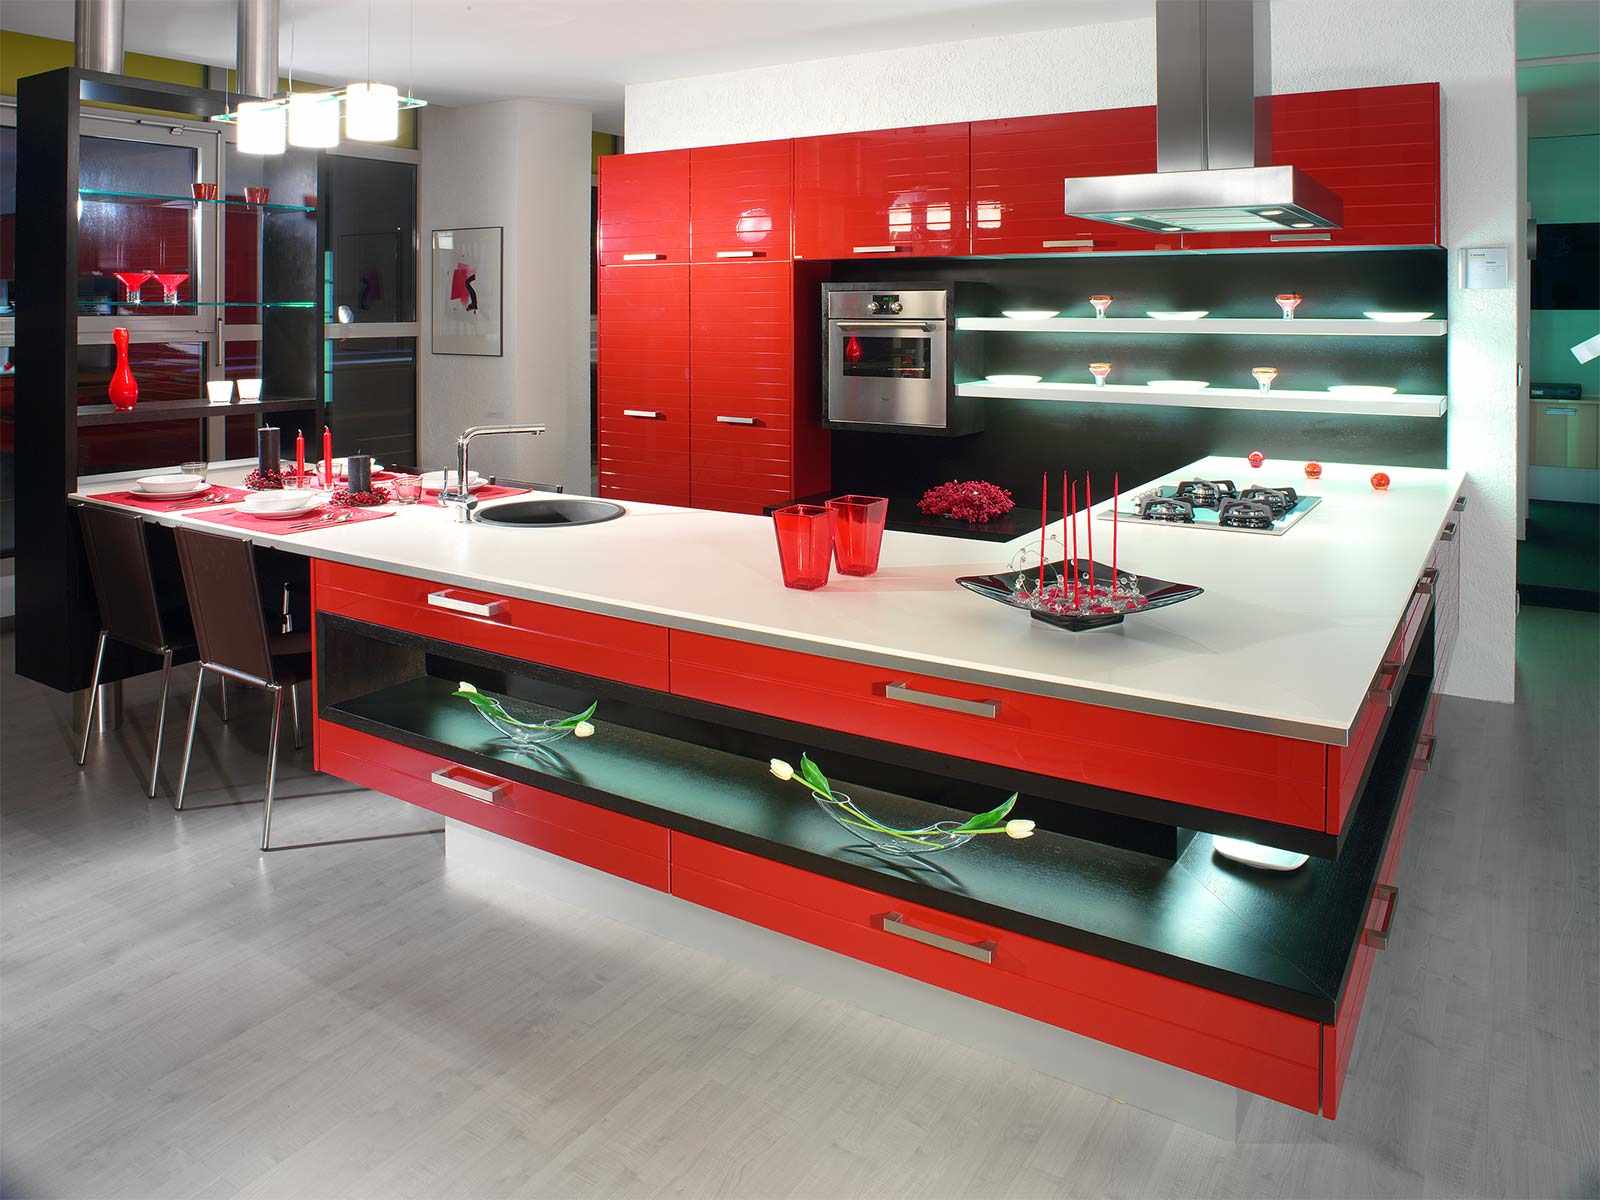 Хорошая качественная кухня. Красная кухня икеа. Самая красивая кухня. Красивые стильные кухни. Красивые современные кухни.